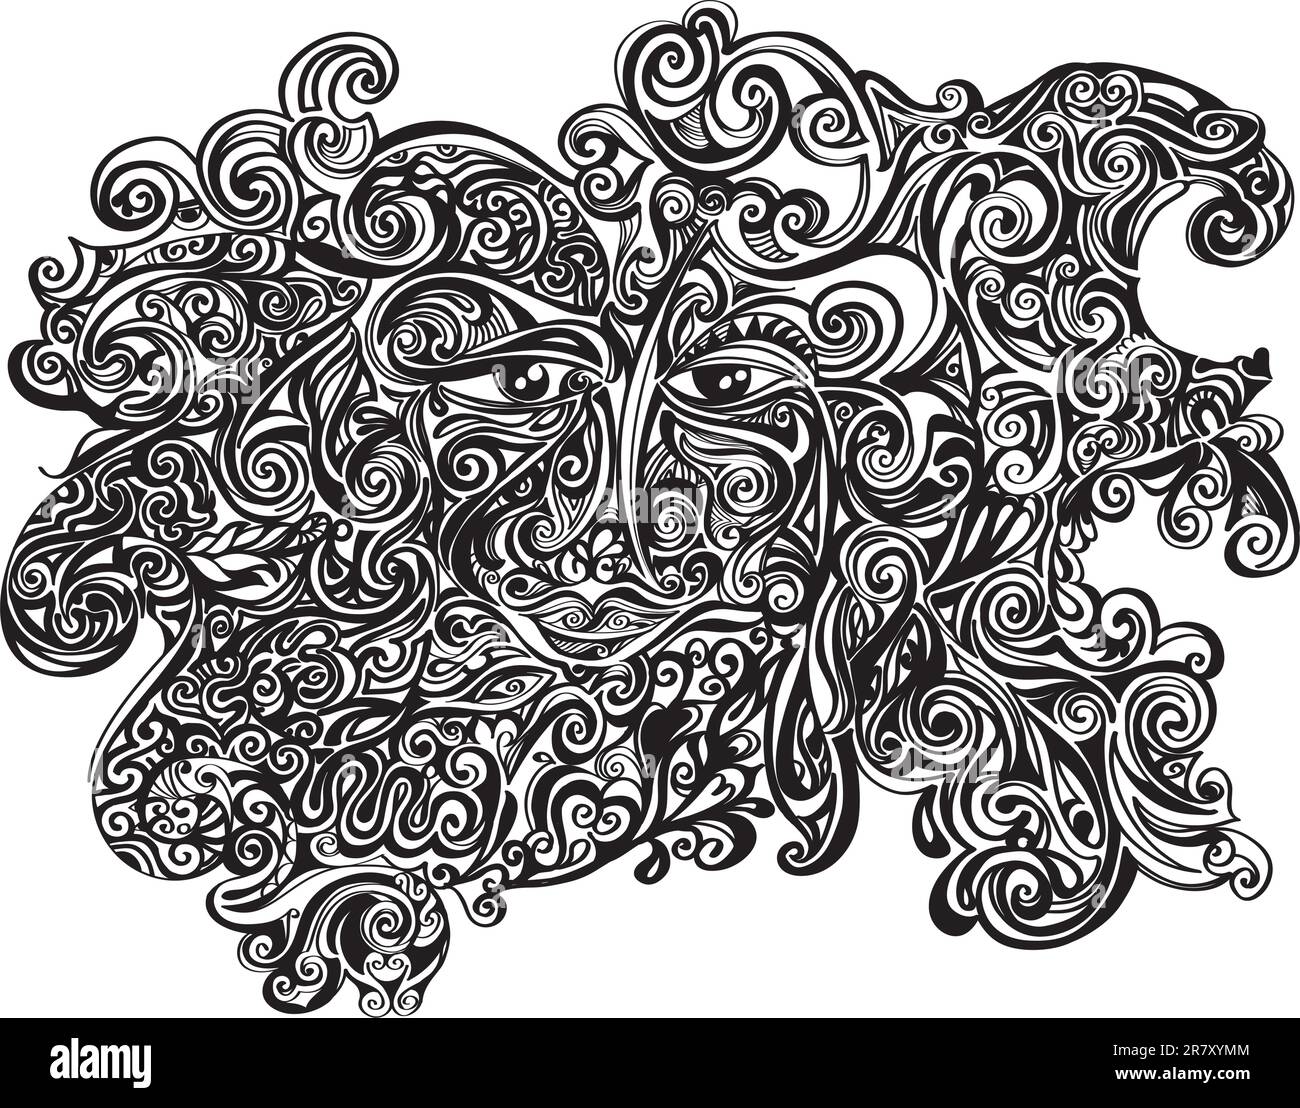 Schwarz-weiße Illustration eines sehr detailgetreuen, dekorierten Gesichts Stock Vektor